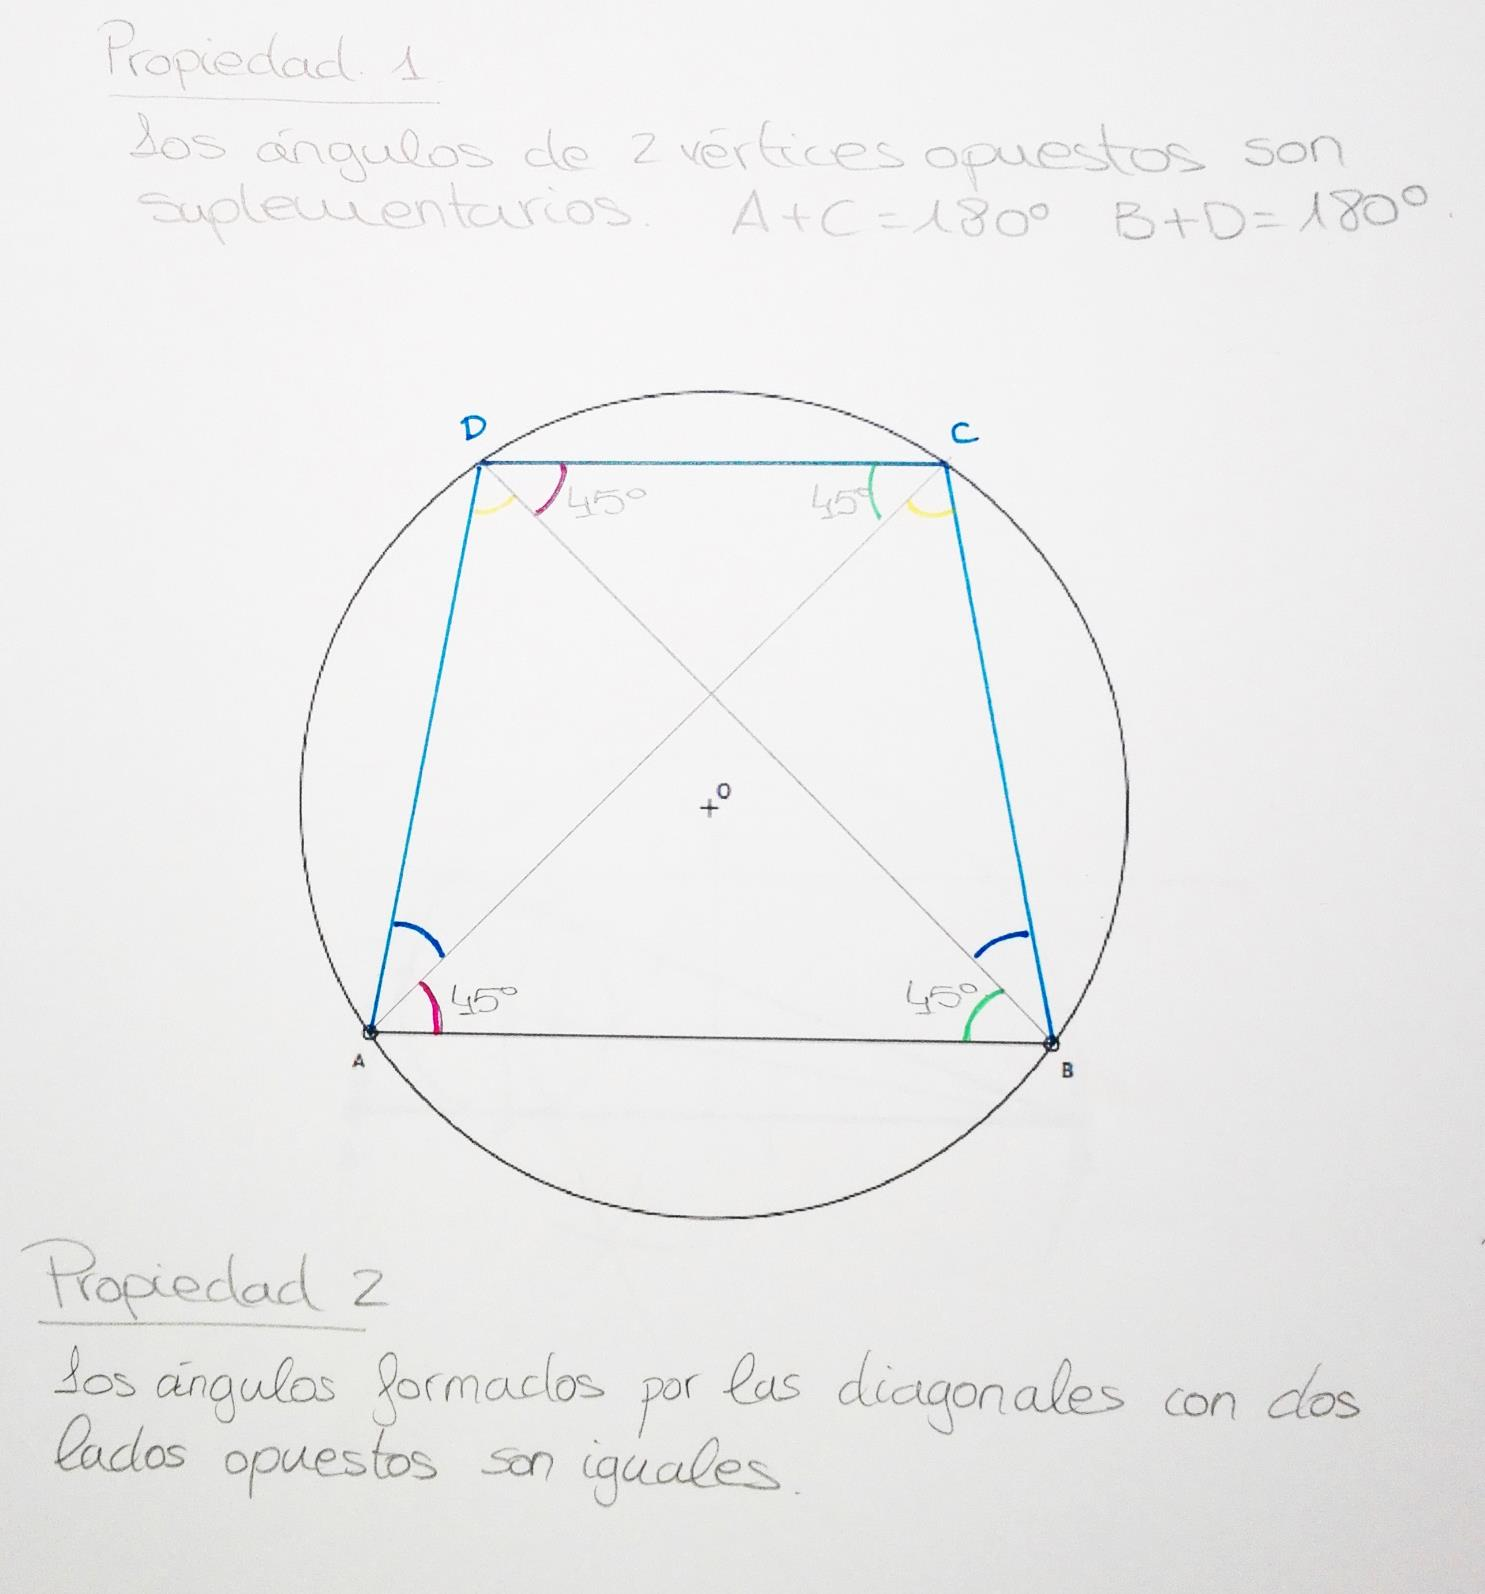 3-Dada la circunferencia de cento O y una cuerda AB de la misma, se pide: a) Representar el trapecio isósceles inscrito en la circunferencia, siendo su base mayor la